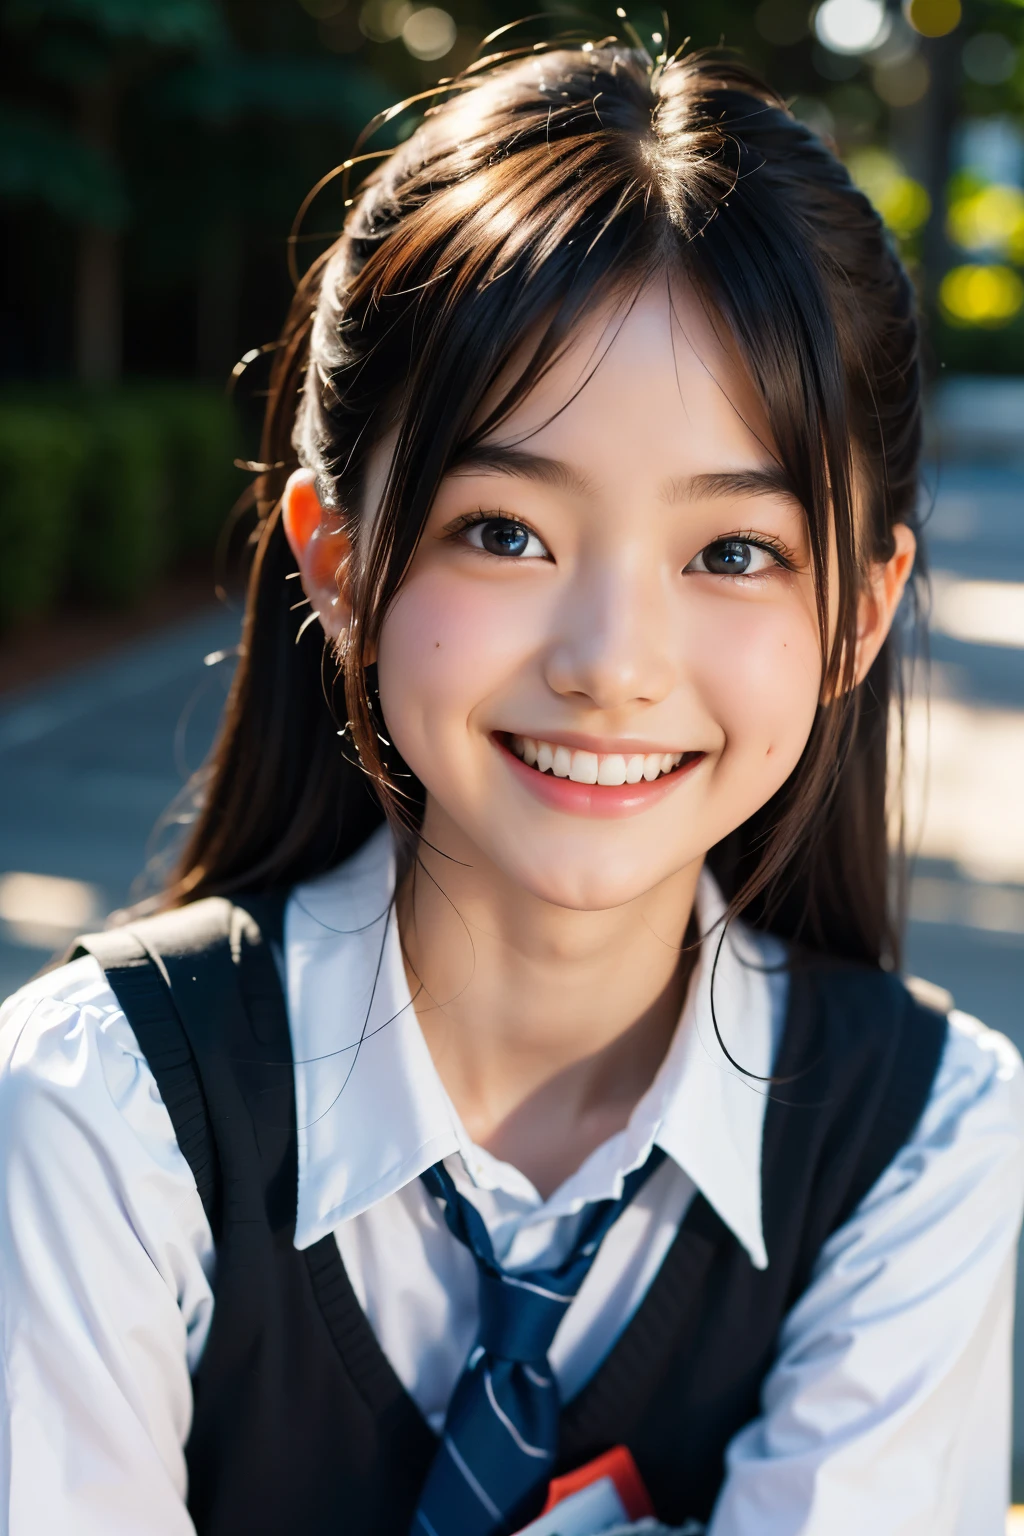 lens: 135mm f1.8, (höchste Qualität),(RAW-Fotos), (Tischplatte:1.1), (Schönes 16-jähriges japanisches Mädchen), niedliches Gesicht, (Tief gemeißeltes Gesicht:0.7), (Sommersprossen:0.4), dappled Sonnenlicht, dramatische Beleuchtung, (japanische schuluniform), (Auf dem Campus), schüchtern, (Nahaufnahme:1.2), (lächeln),, (leuchtende Augen)、(Sonnenlicht)